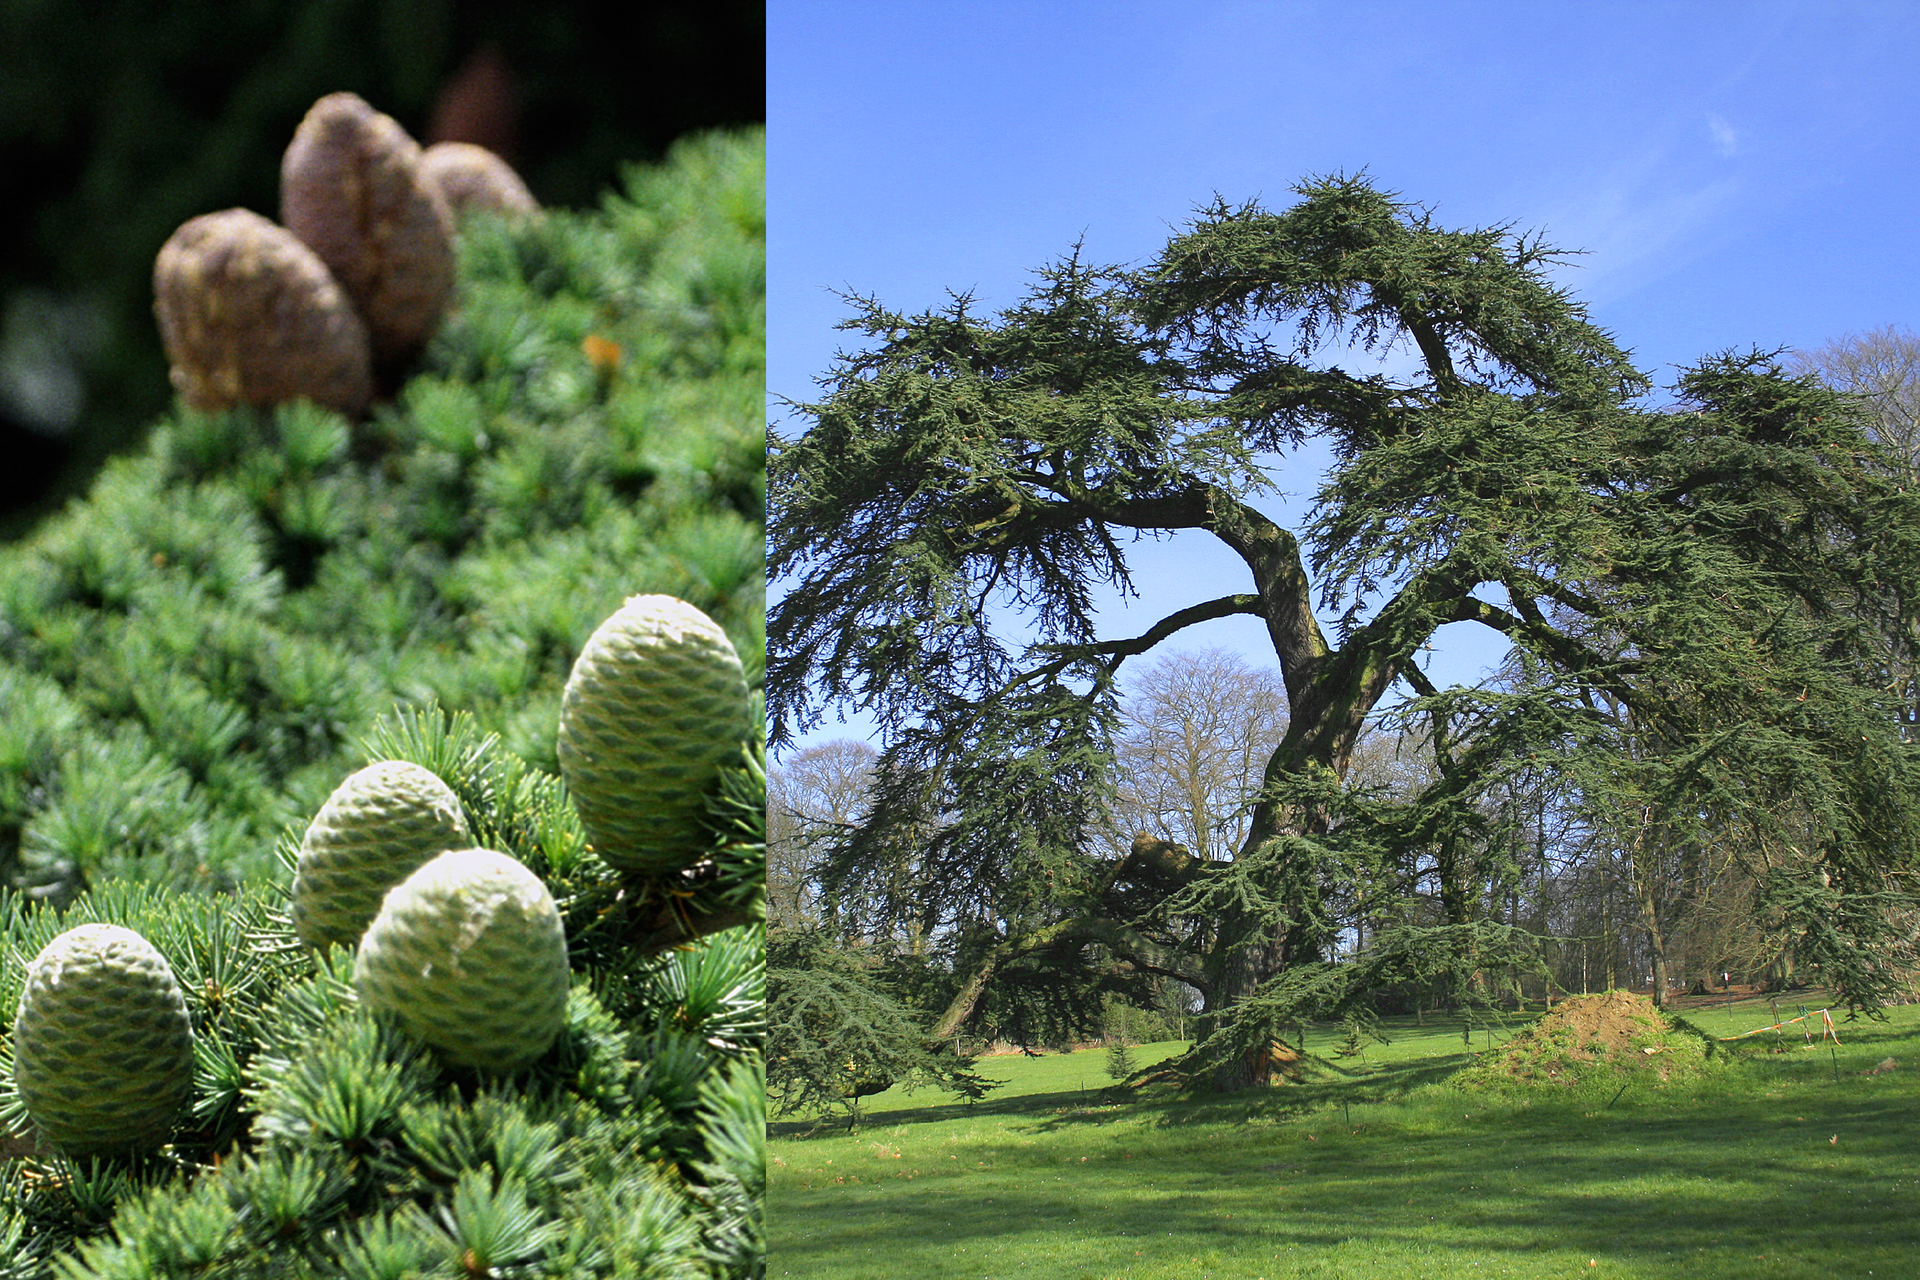 Fotografia z lewej przedstawia gałęzie cedru libańskiego z krótkimi jasno zielonymi igłami w pęczkach. Między gęstymi liśćmi stoją beczułkowate szyszki: z przodu szaro zielone, z tyłu brązowe. Fotografia z prawej przedstawia pojedyncze, rozłożyste drzewo na trawniku. W tle inne drzewa.